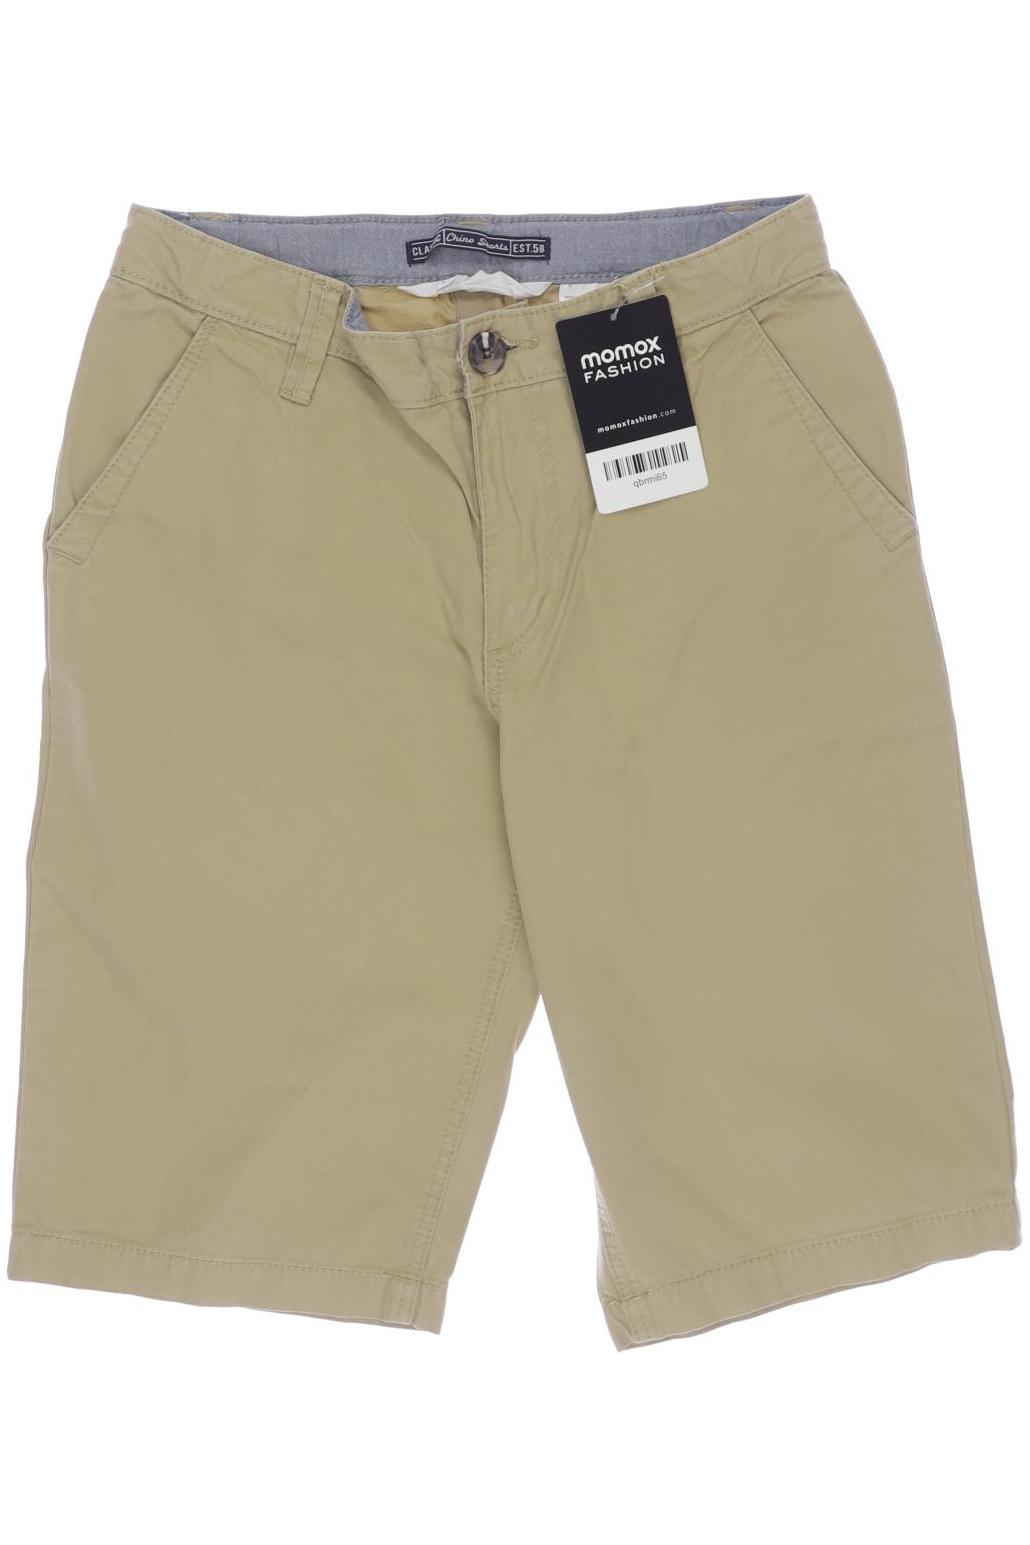 H&M Jungen Shorts, beige von H&M